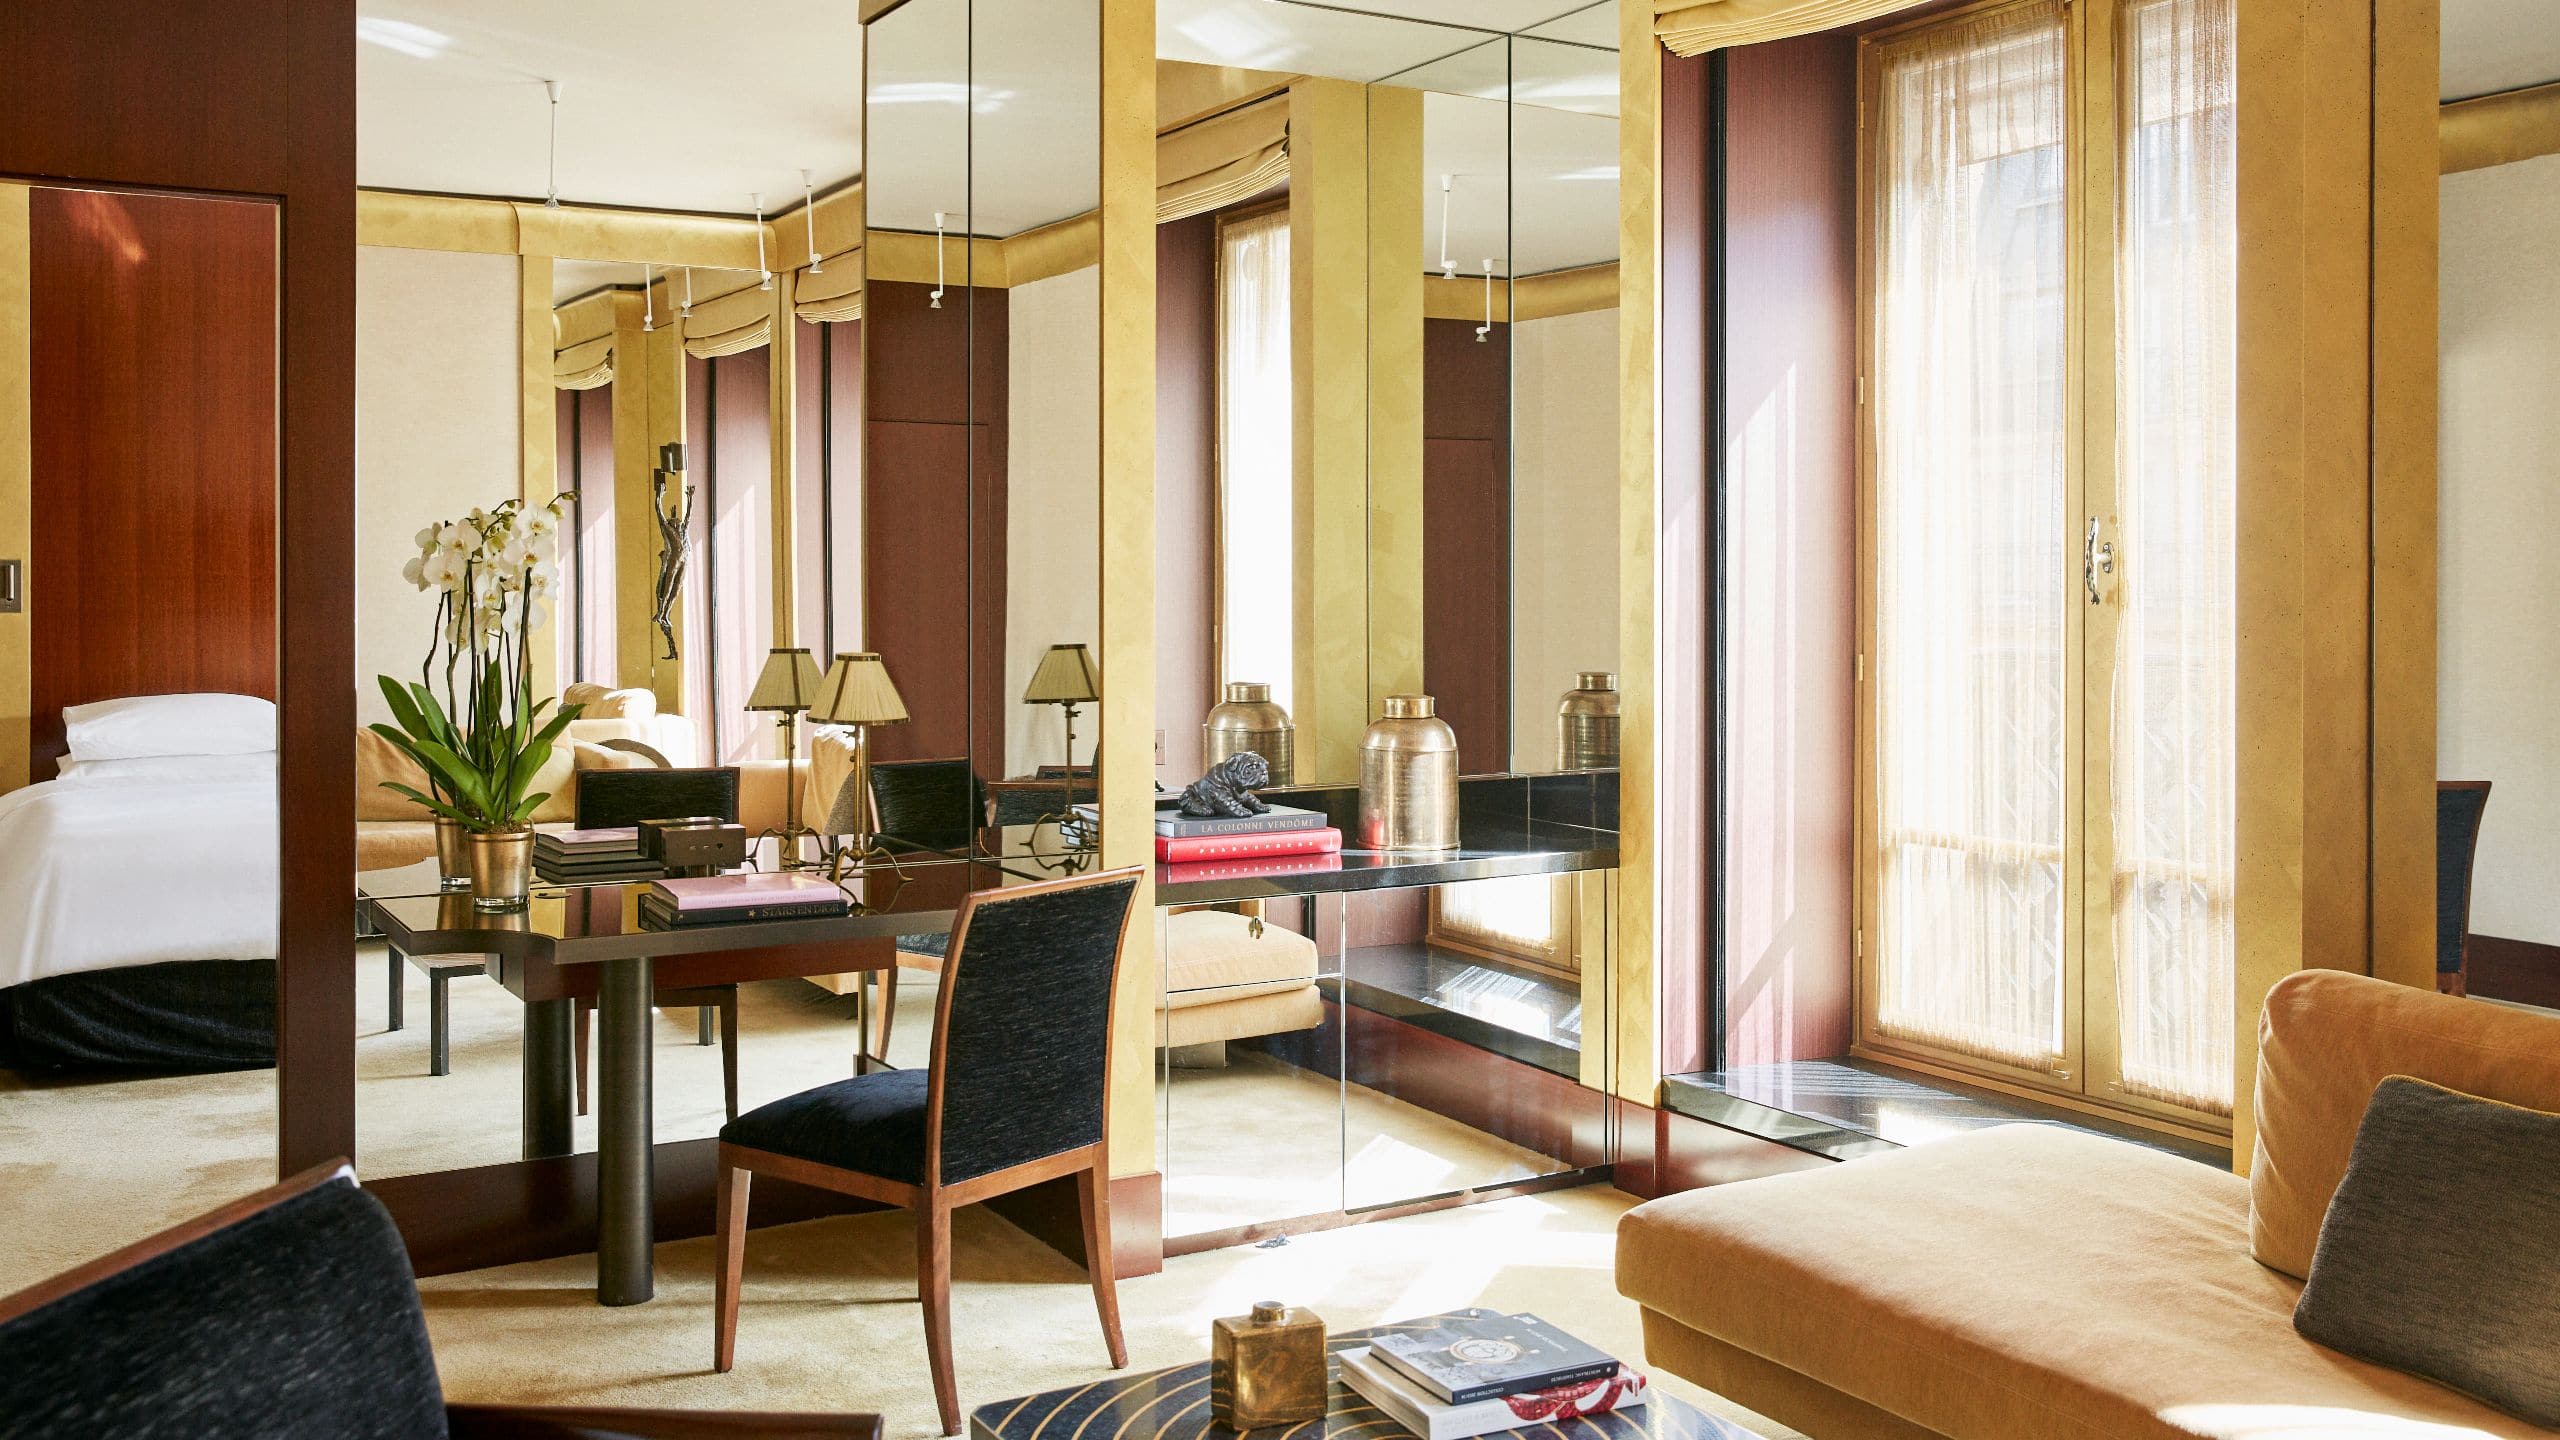 パリのラグジュアリーホテルの客室とスイート | パーク ハイアット 